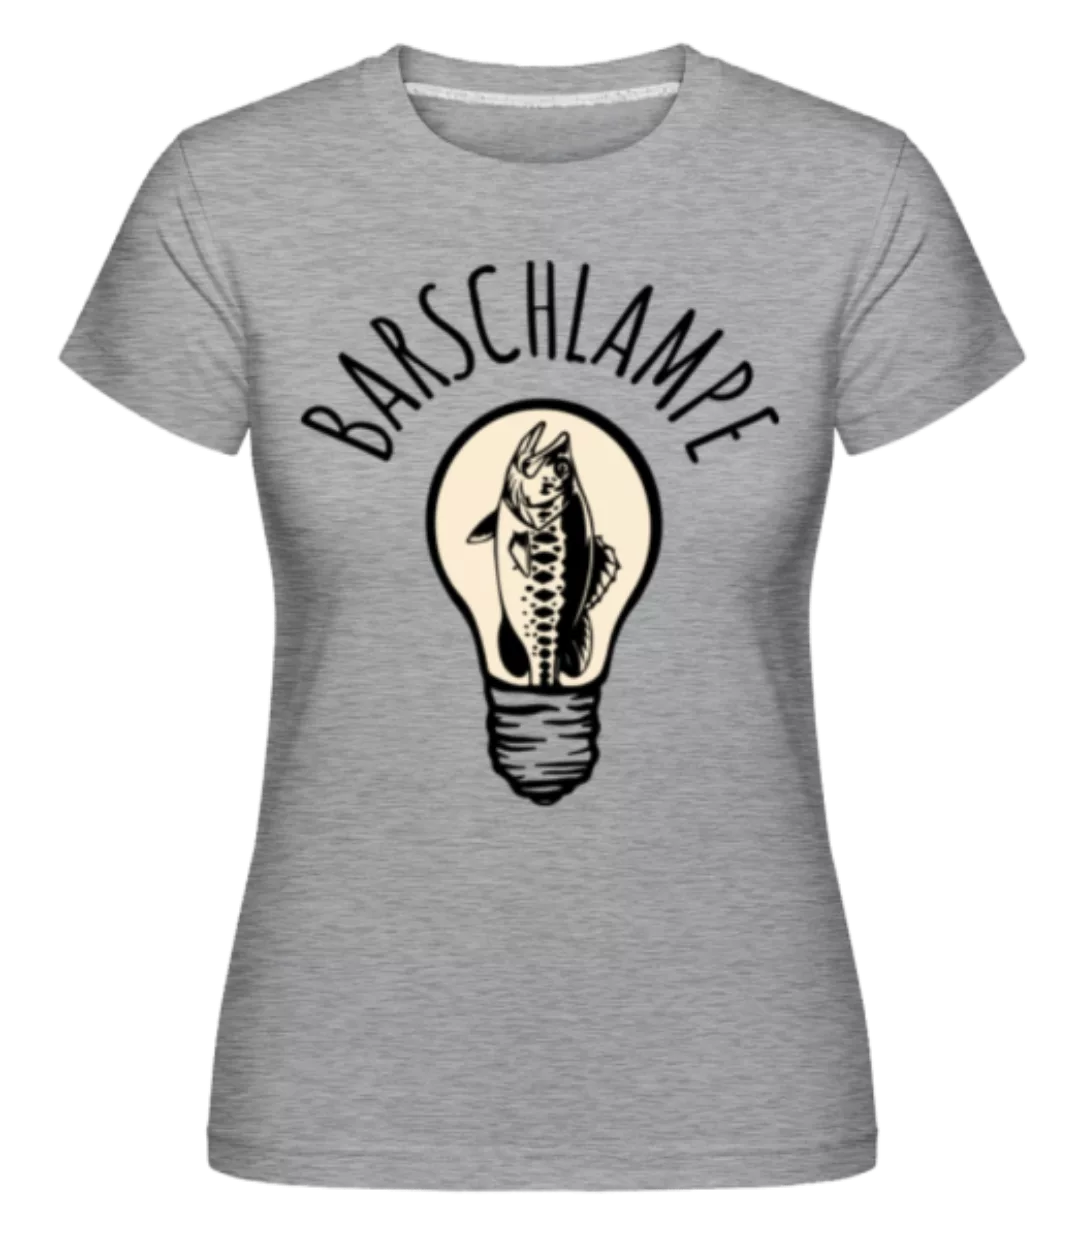 Barschlampe · Shirtinator Frauen T-Shirt günstig online kaufen